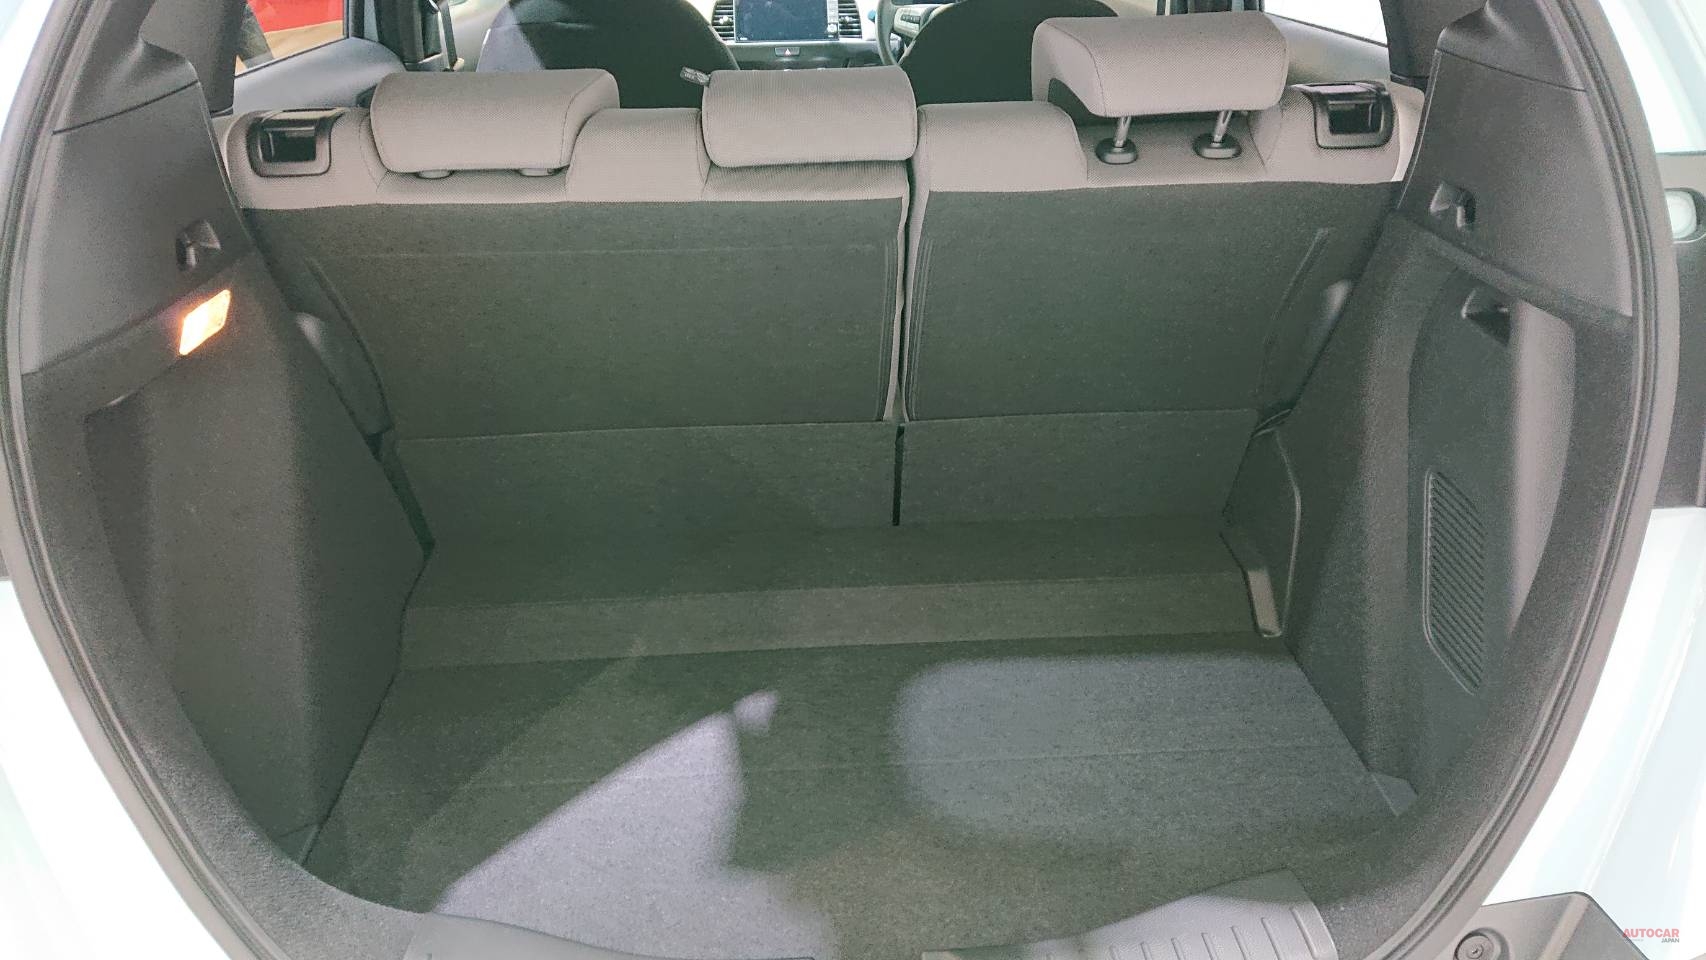 ホンダ フィット クロスター 新型フィットに Suvテイストの派生モデル 内装 荷室を撮影 Autocar Japan 自動車情報サイト 新車 中古車 Carview